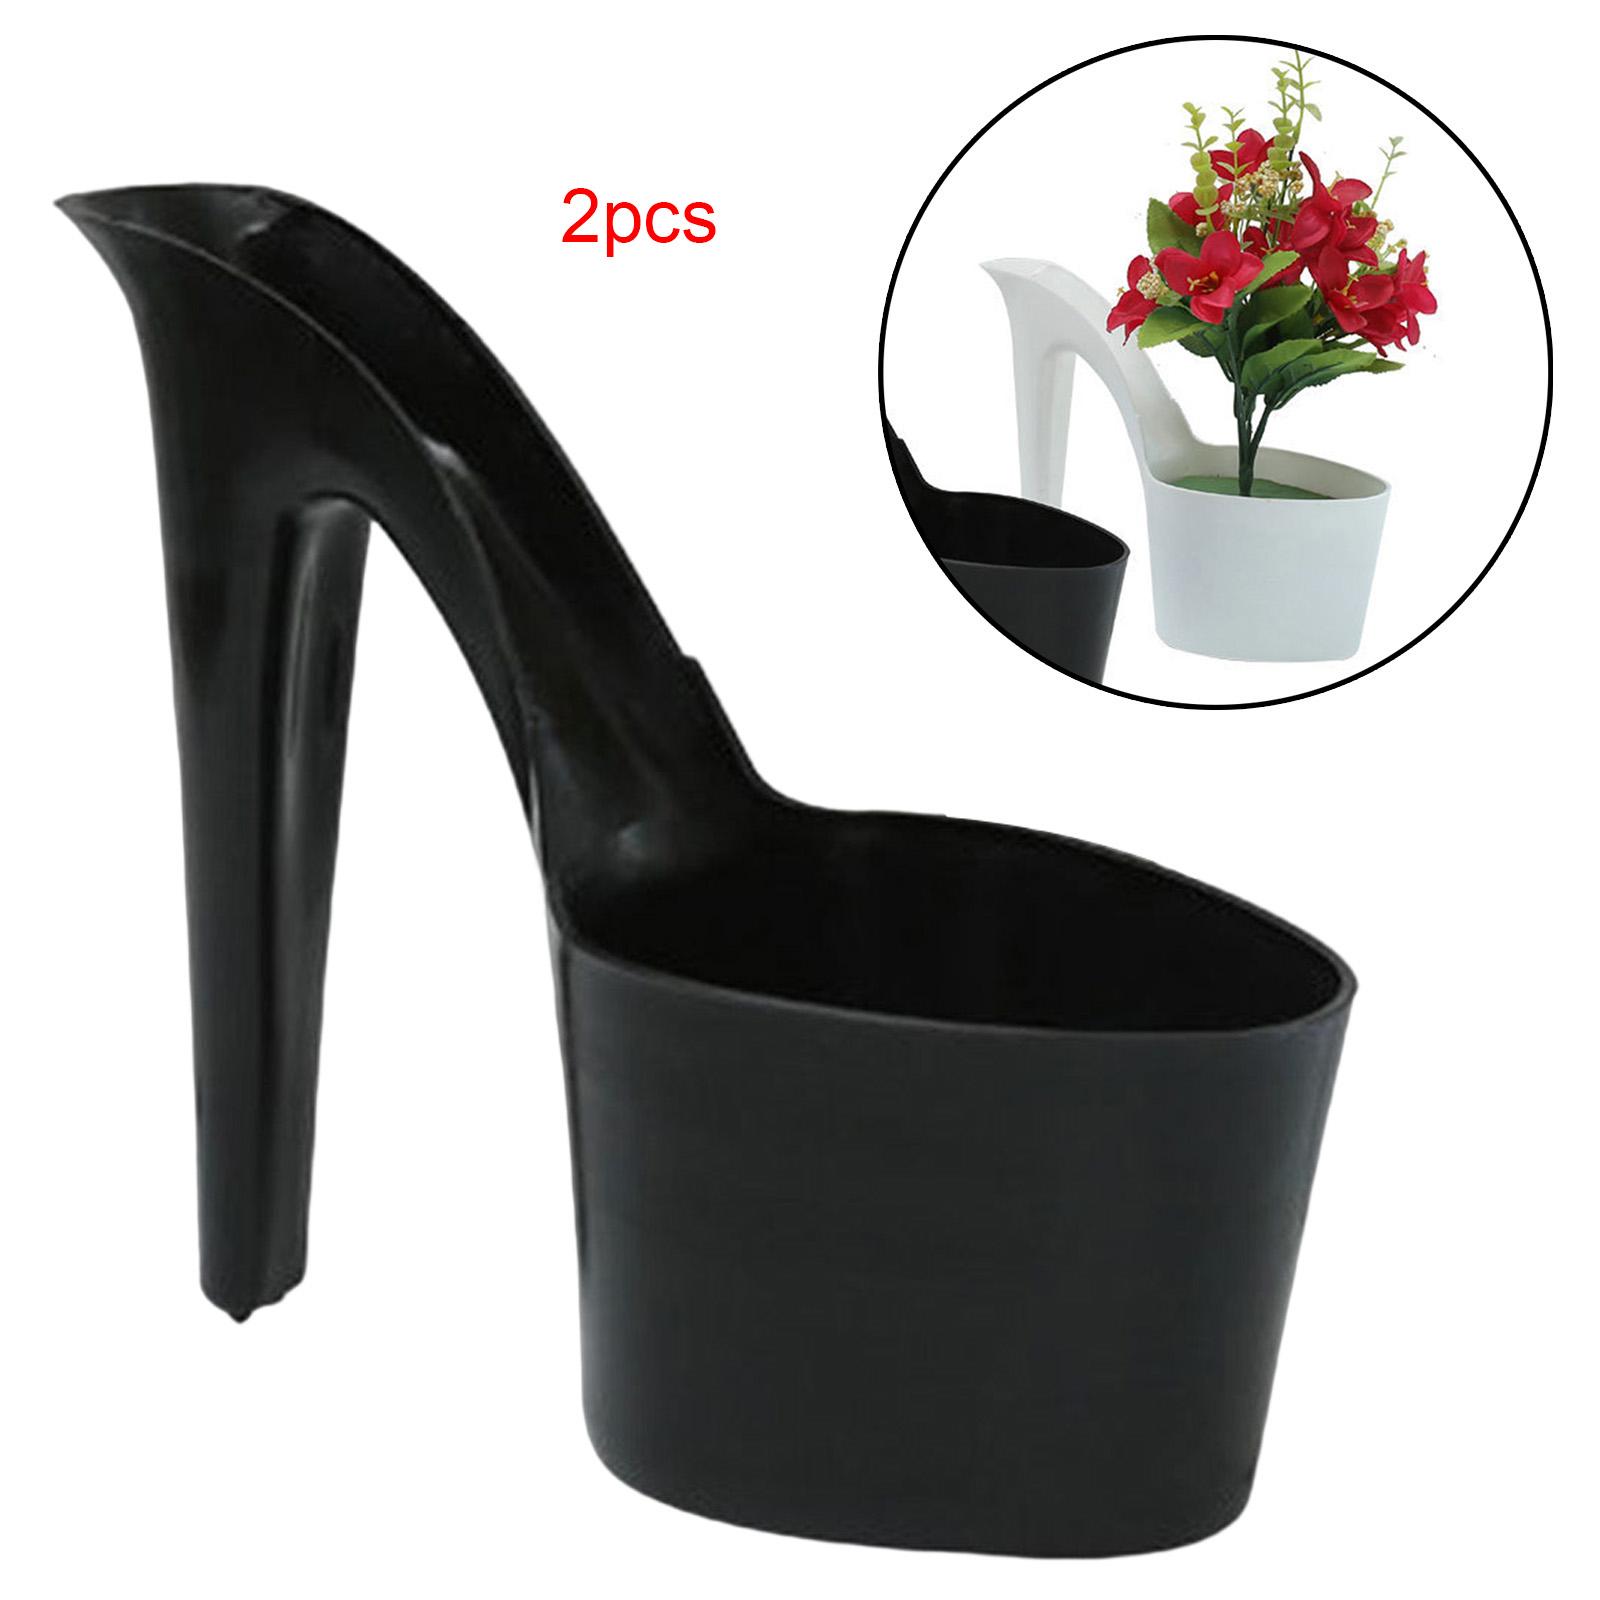 Flower Pot High Heel Shaped Garden Indoor Outdoor Table Ornaments Patio black